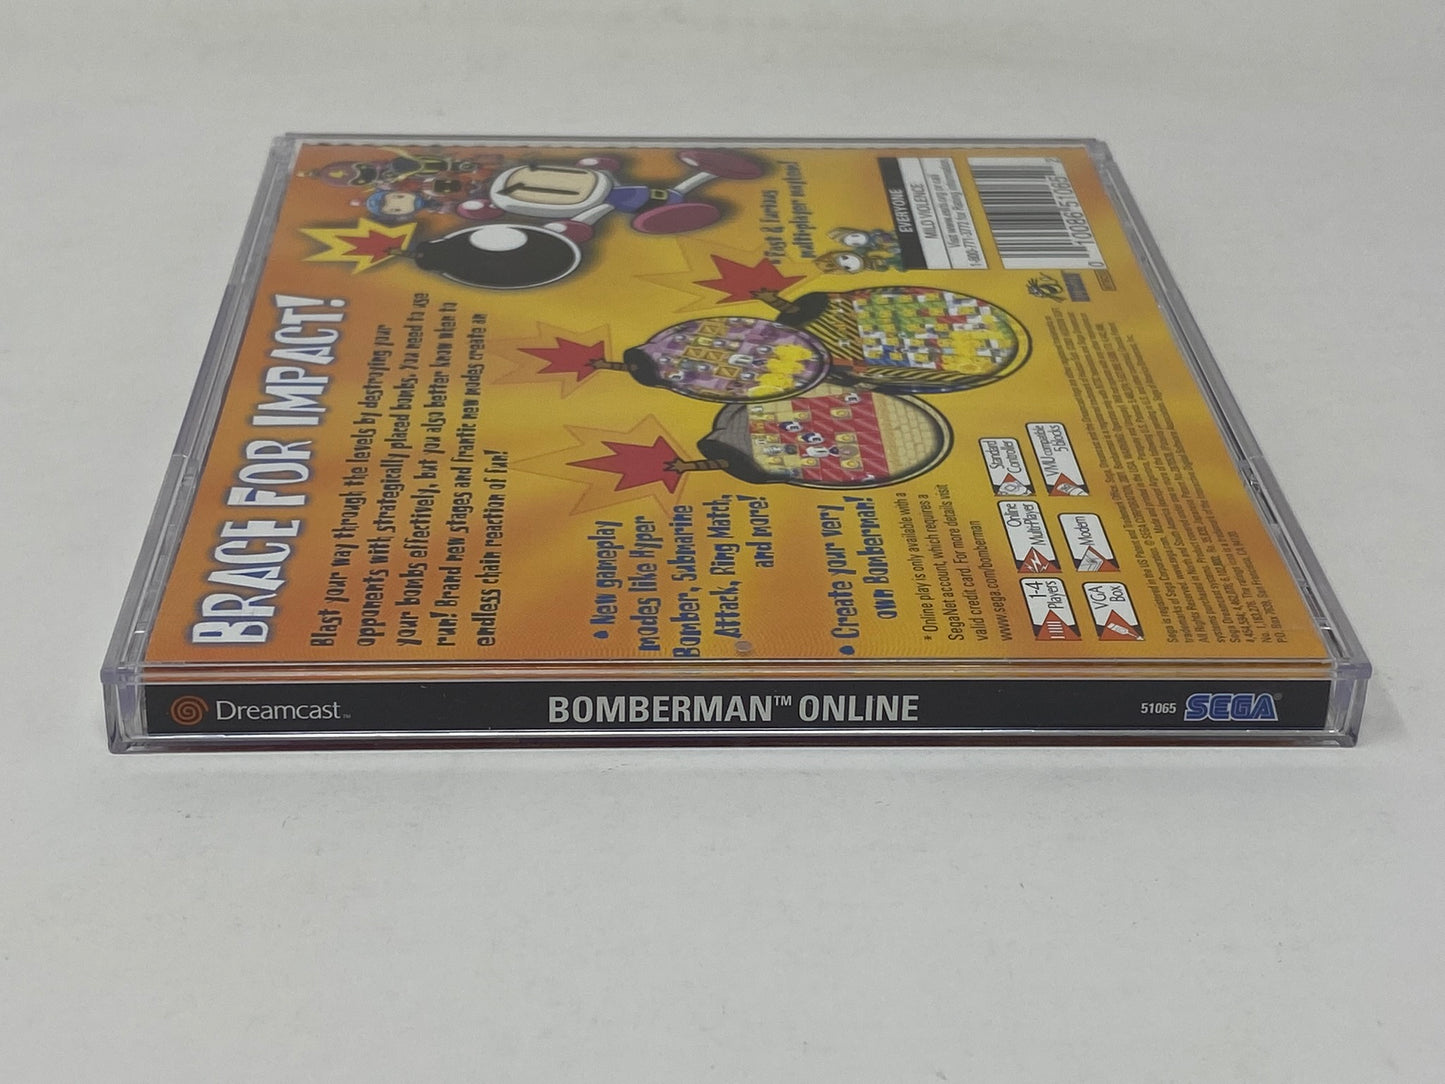 Sega Dreamcast - Bomberman Online